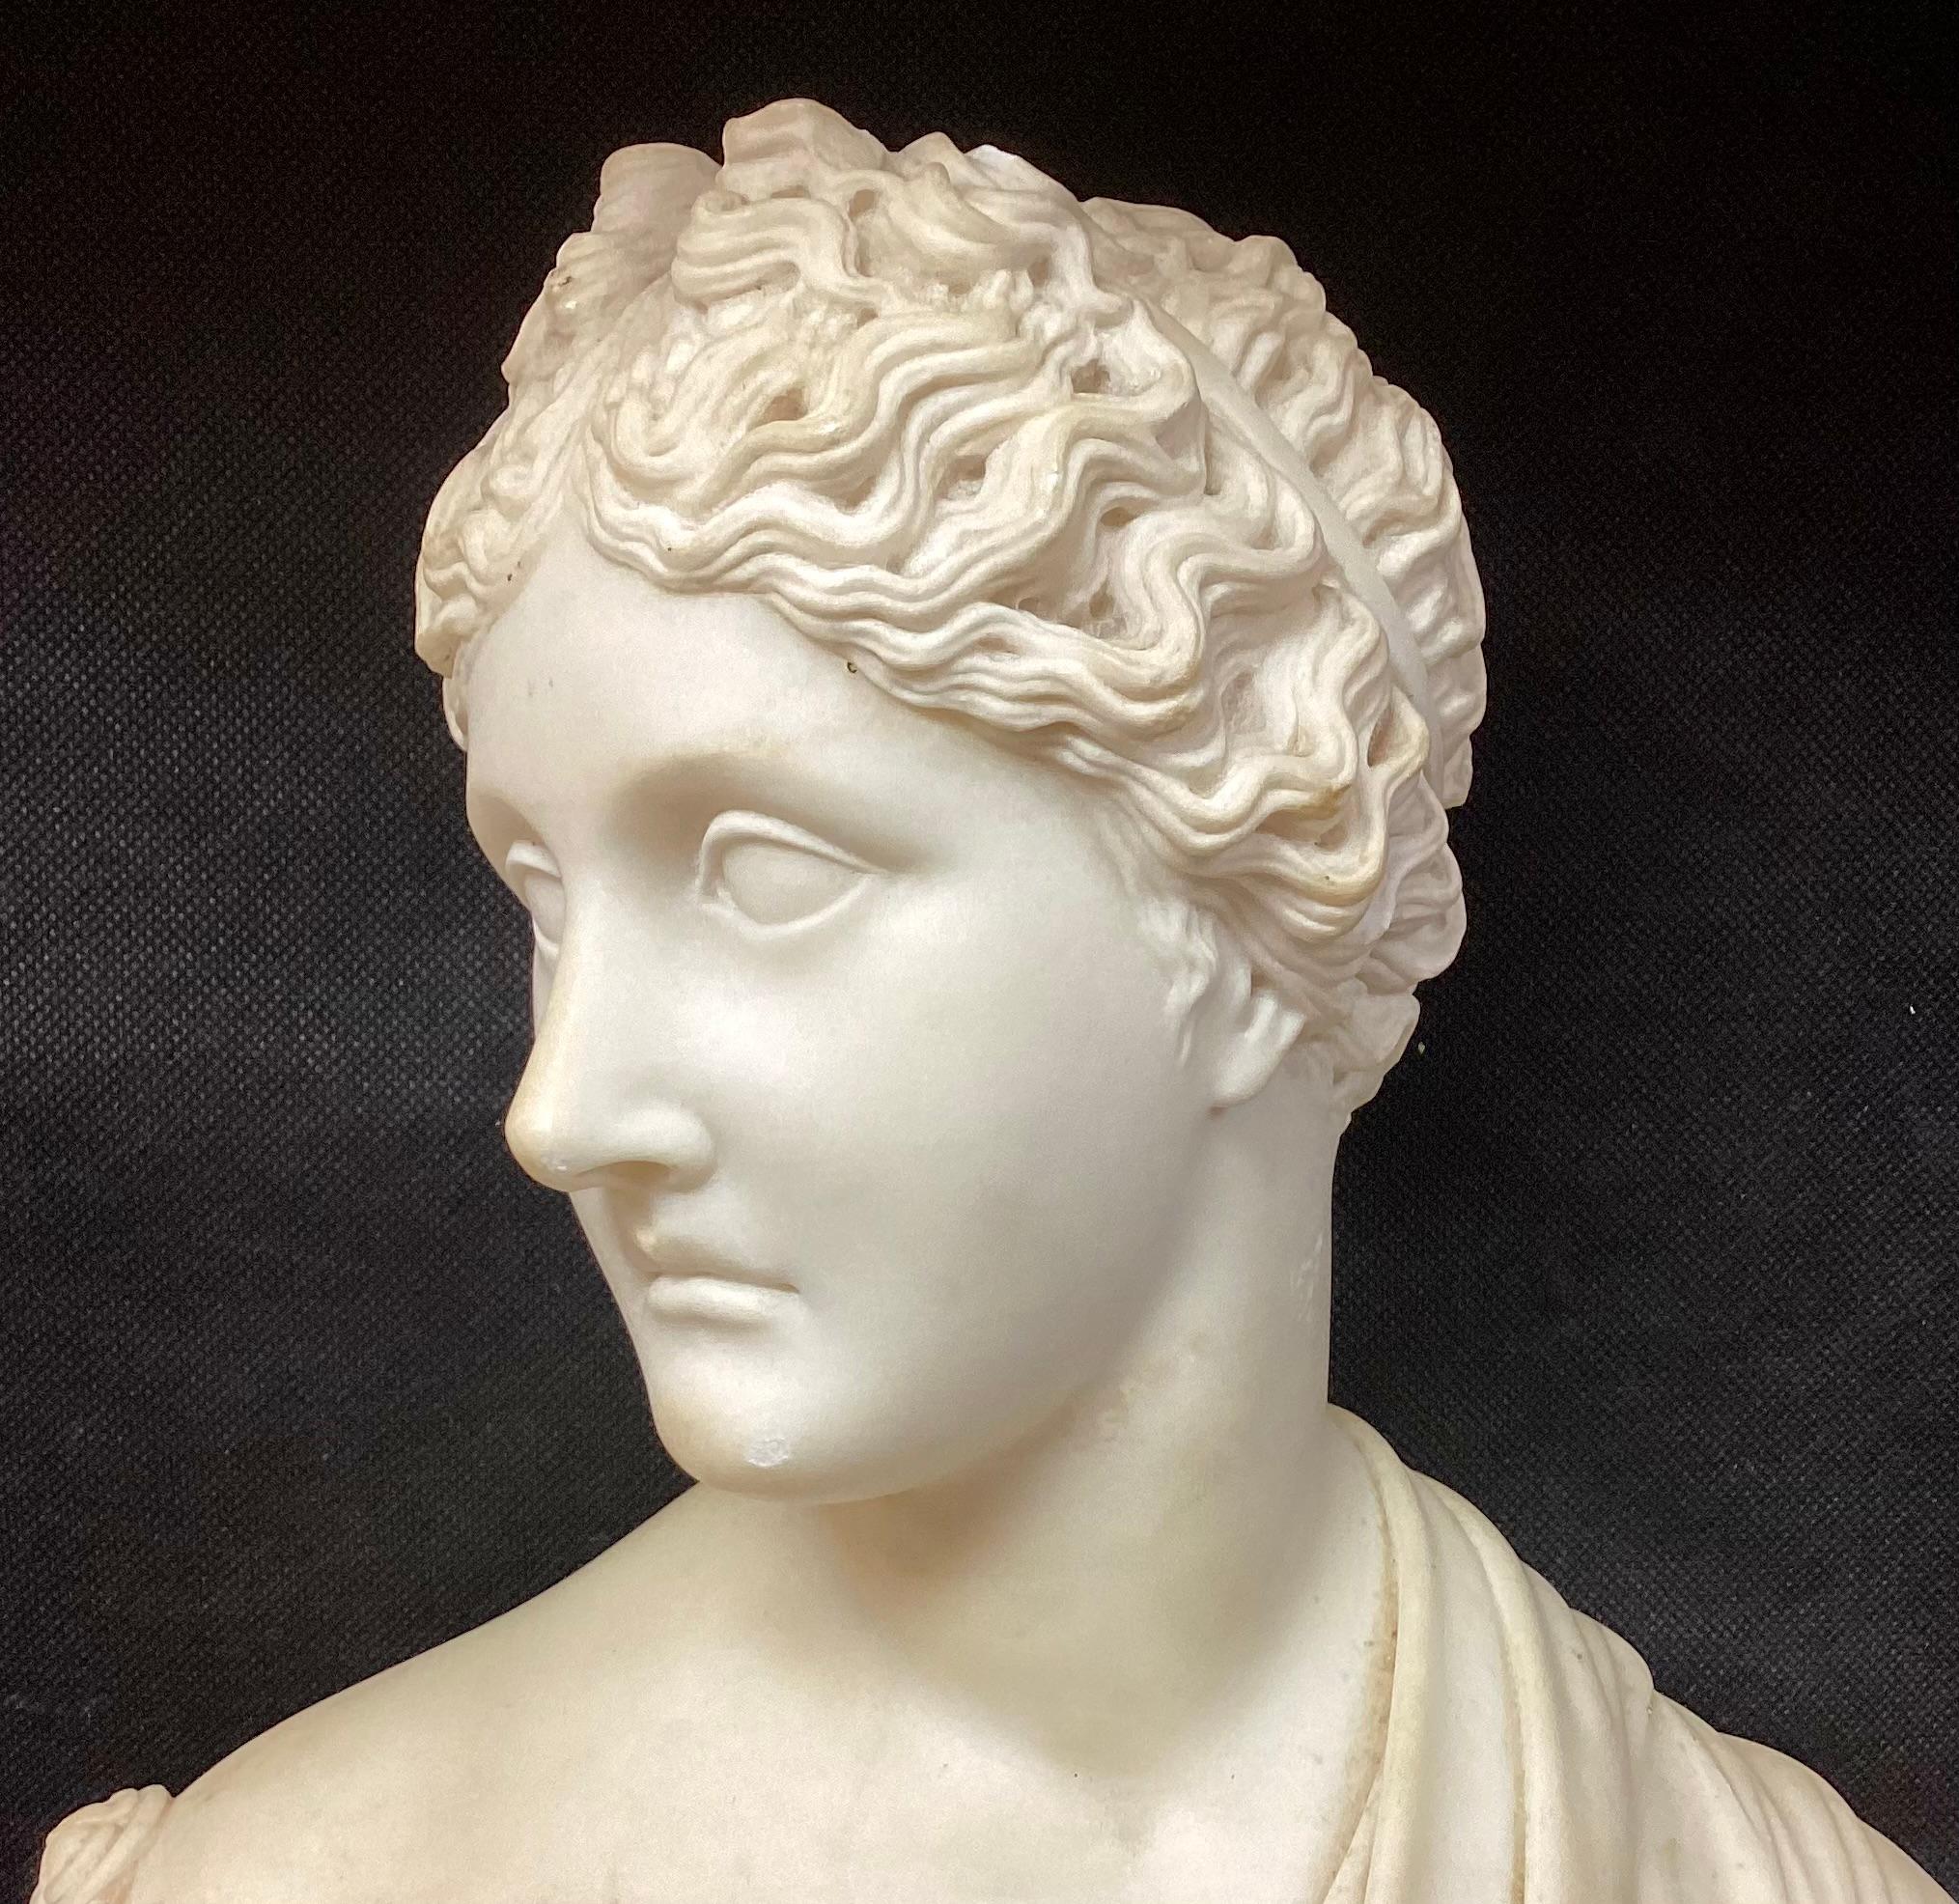 Buste de femme en marbre néoclassique italien du 19e siècle, sculpté à la main. Le buste représente la tête et le cou d'une jeune femme sculptée de façon complexe, portant une délicate draperie sur le décolleté. L'expression de son visage est